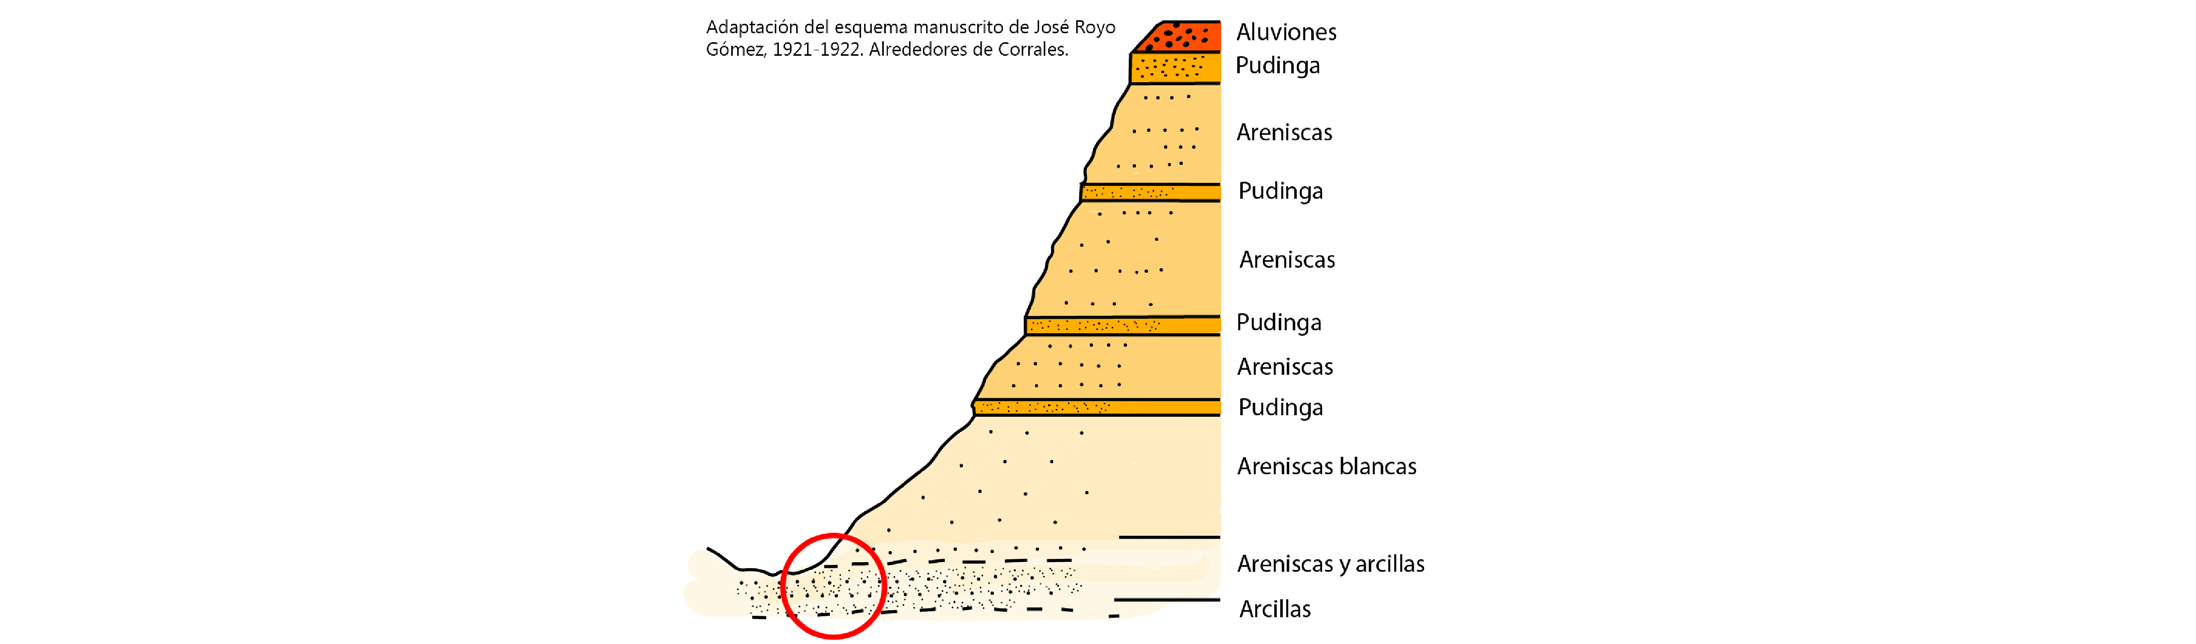 Ambiente sedimentario donde encontrar fósiles según José Arroyo Gómez en 1921